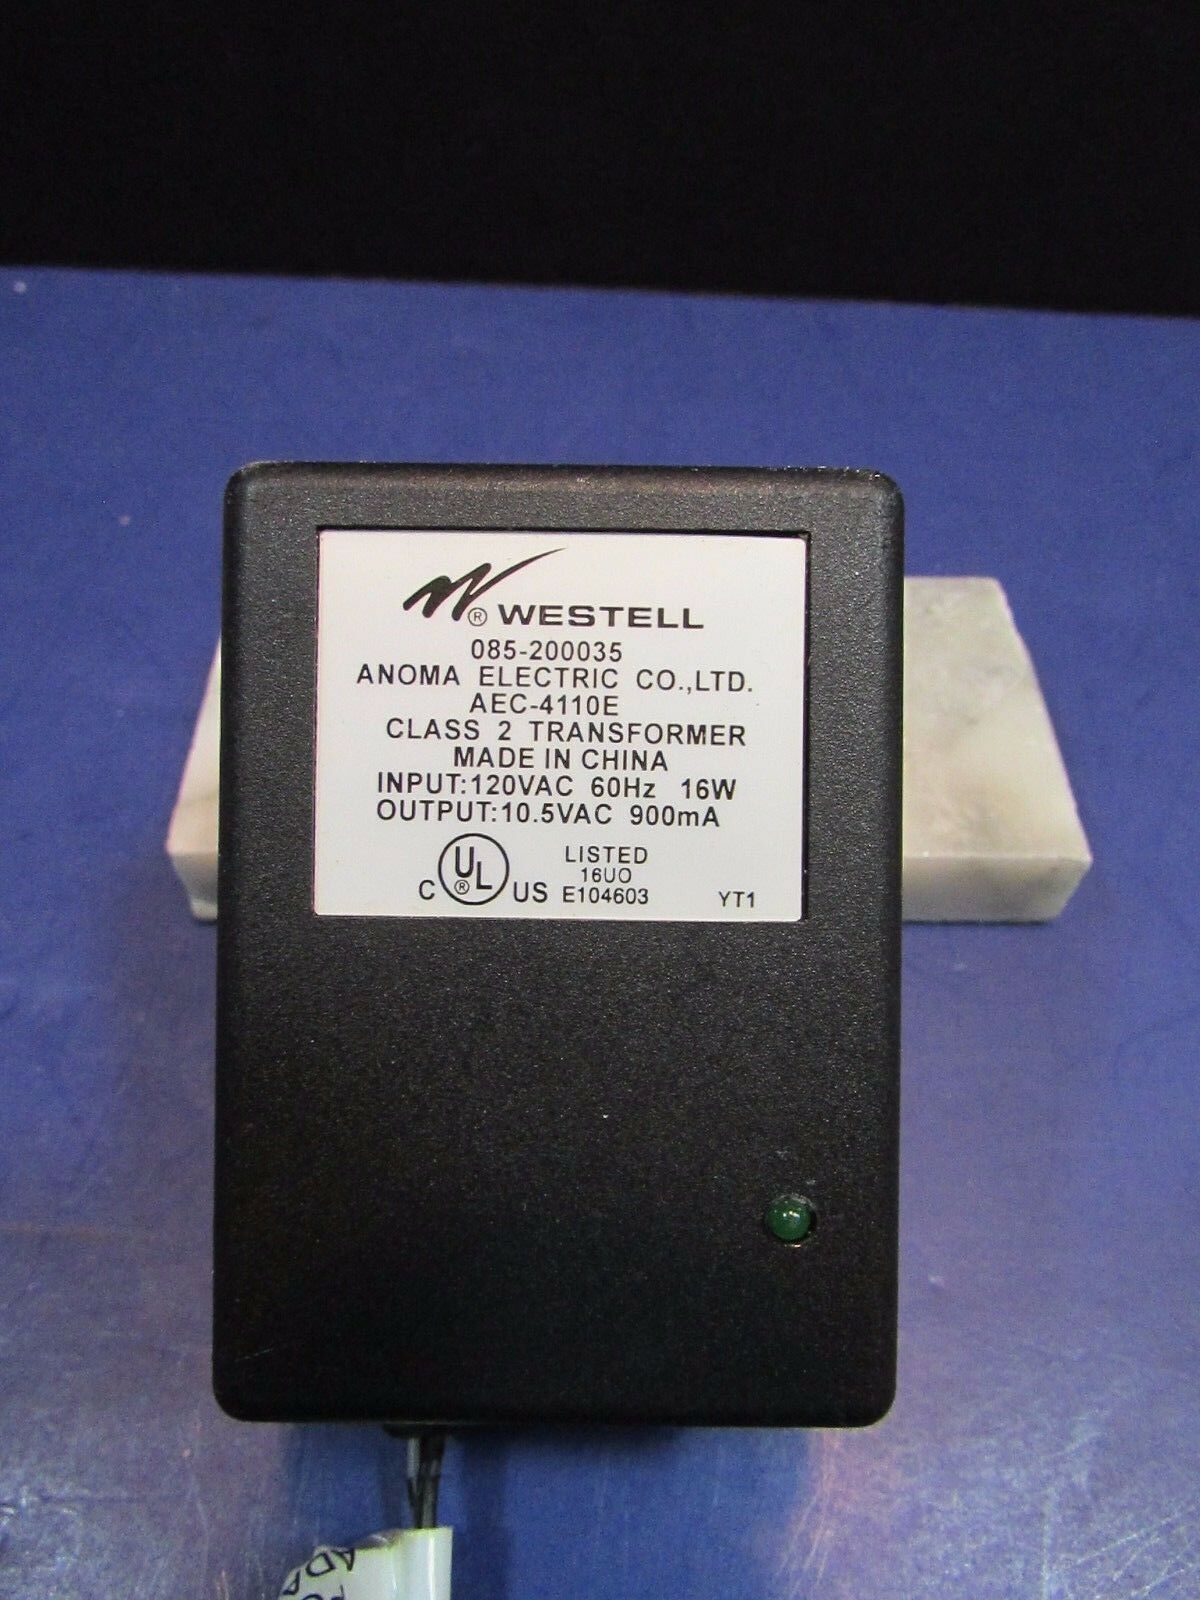 *Brand NEW*Westell 085-200035/AEC-4110E Class 2 Transformer 10.5V 900mA Ac Adapter